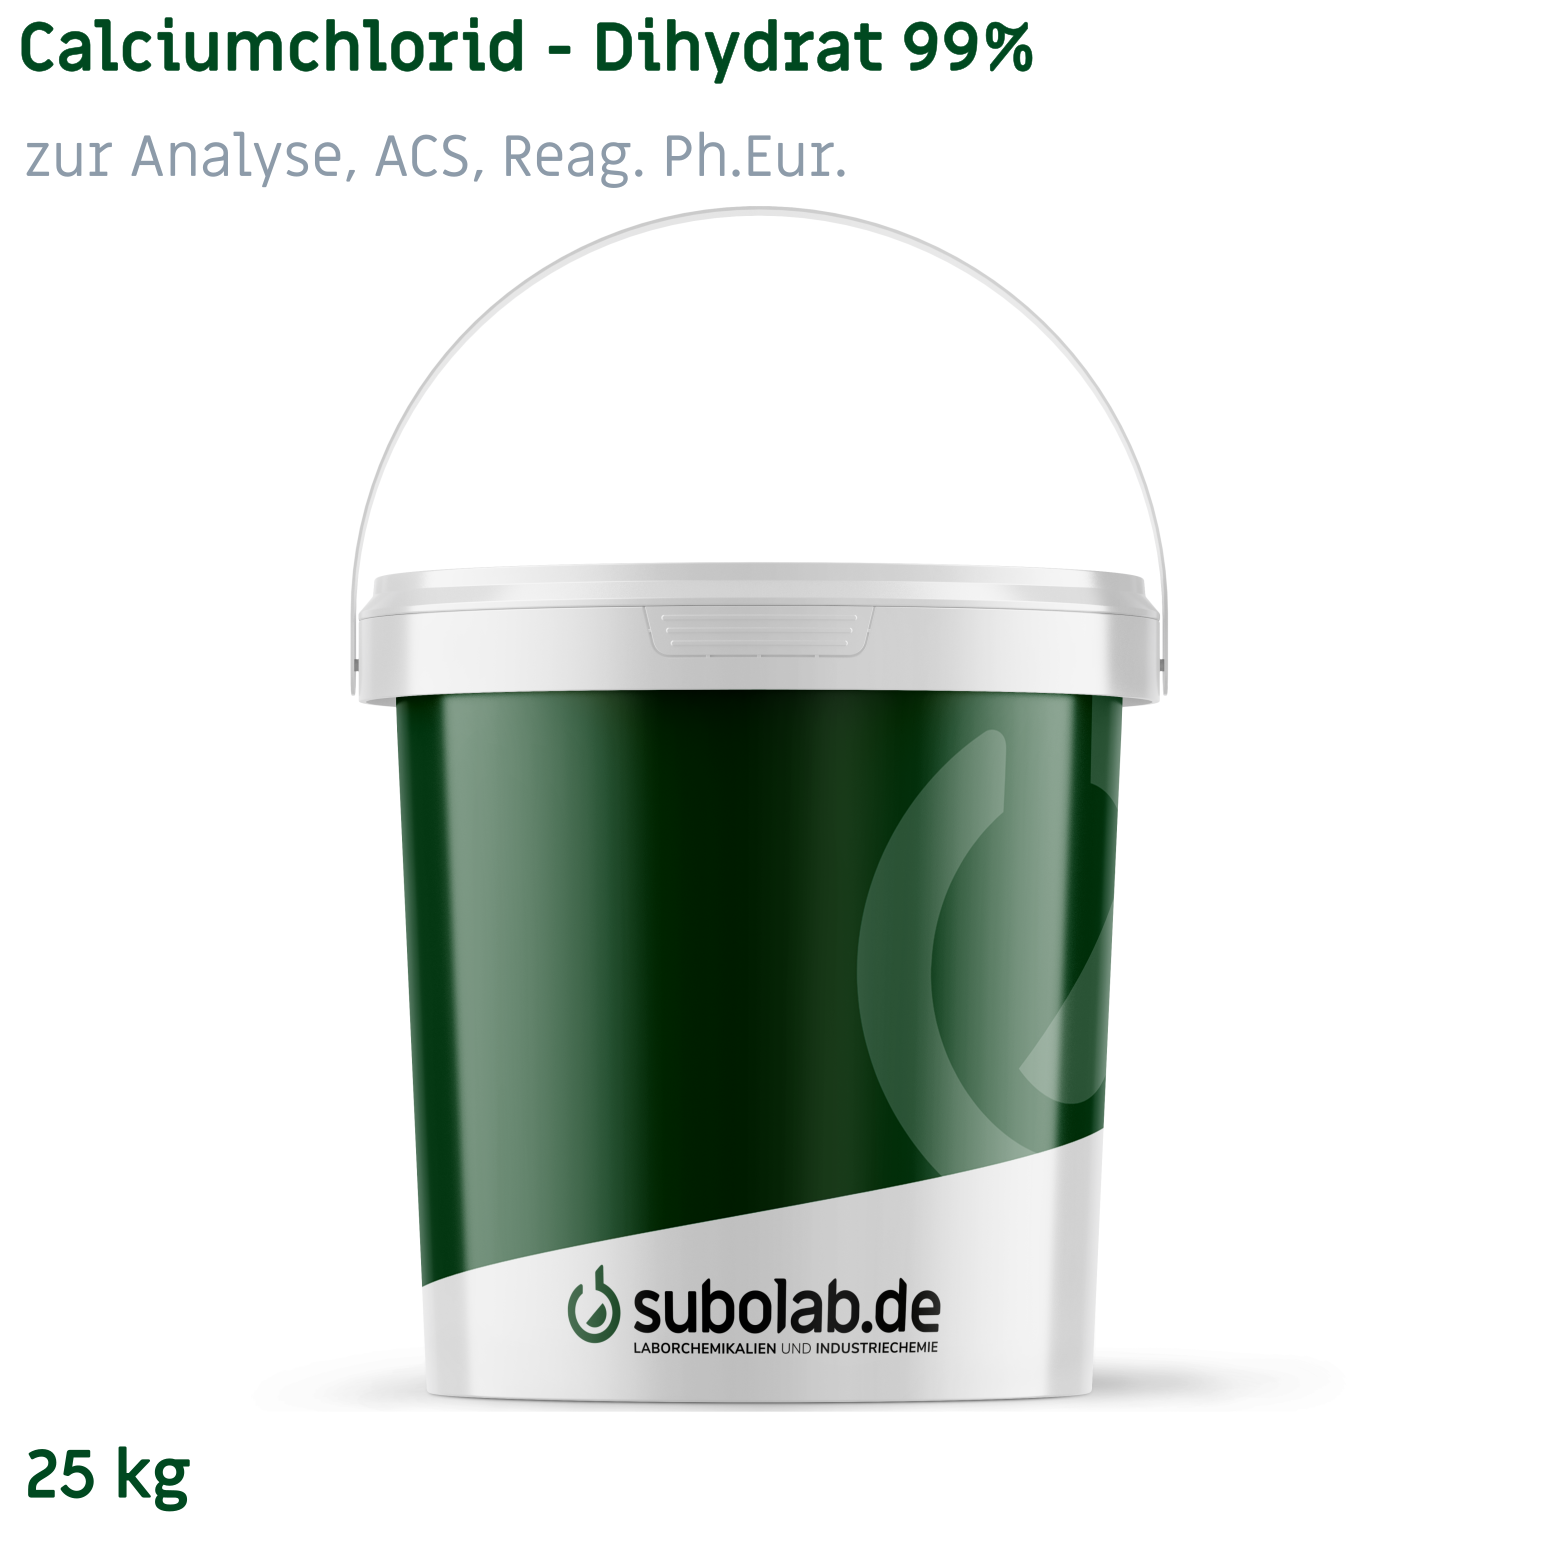 Bild von Calciumchlorid - Dihydrat 99% zur Analyse, ACS, Reag. Ph.Eur. (25 kg)